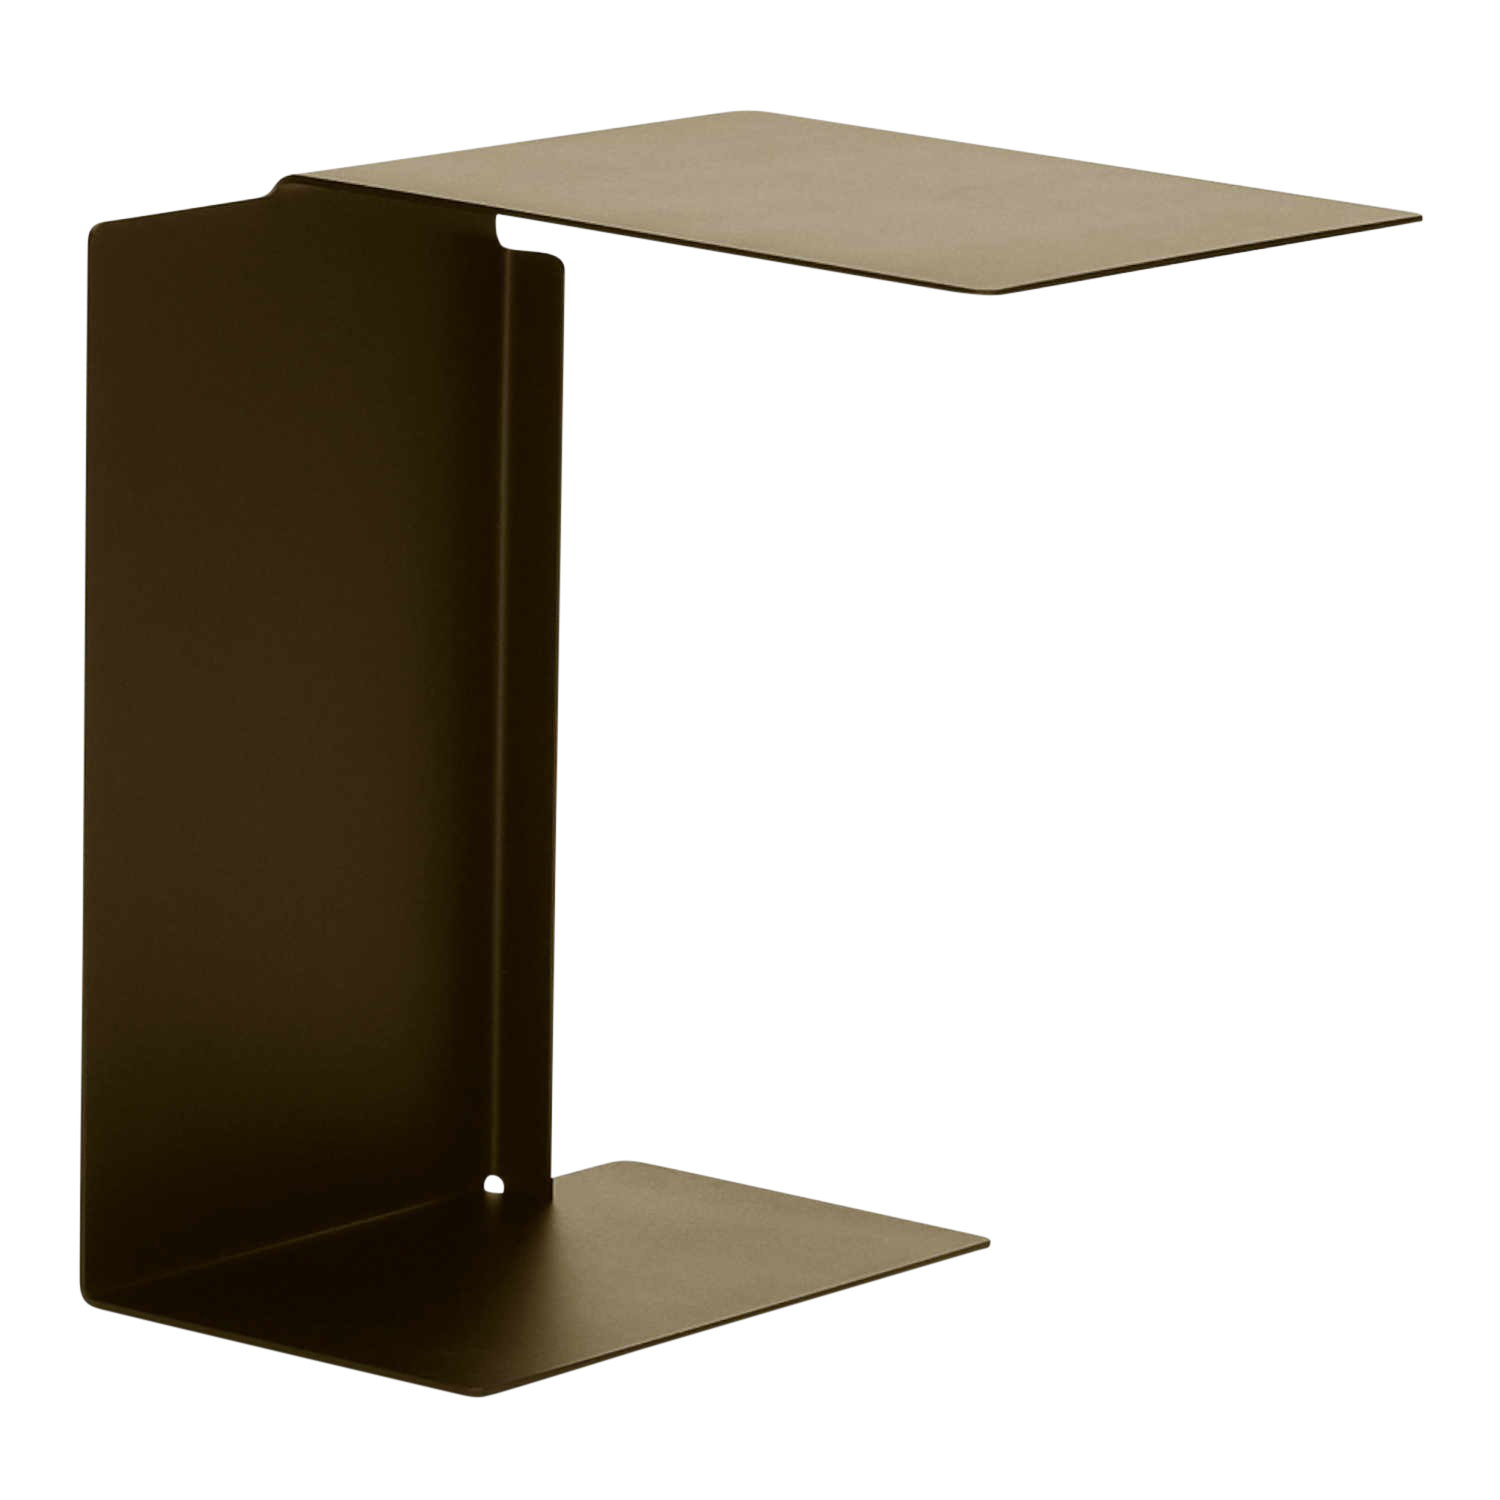 Diana B Side Table Beistelltisch, Farbe honiggelb ral 1005 von ClassiCon